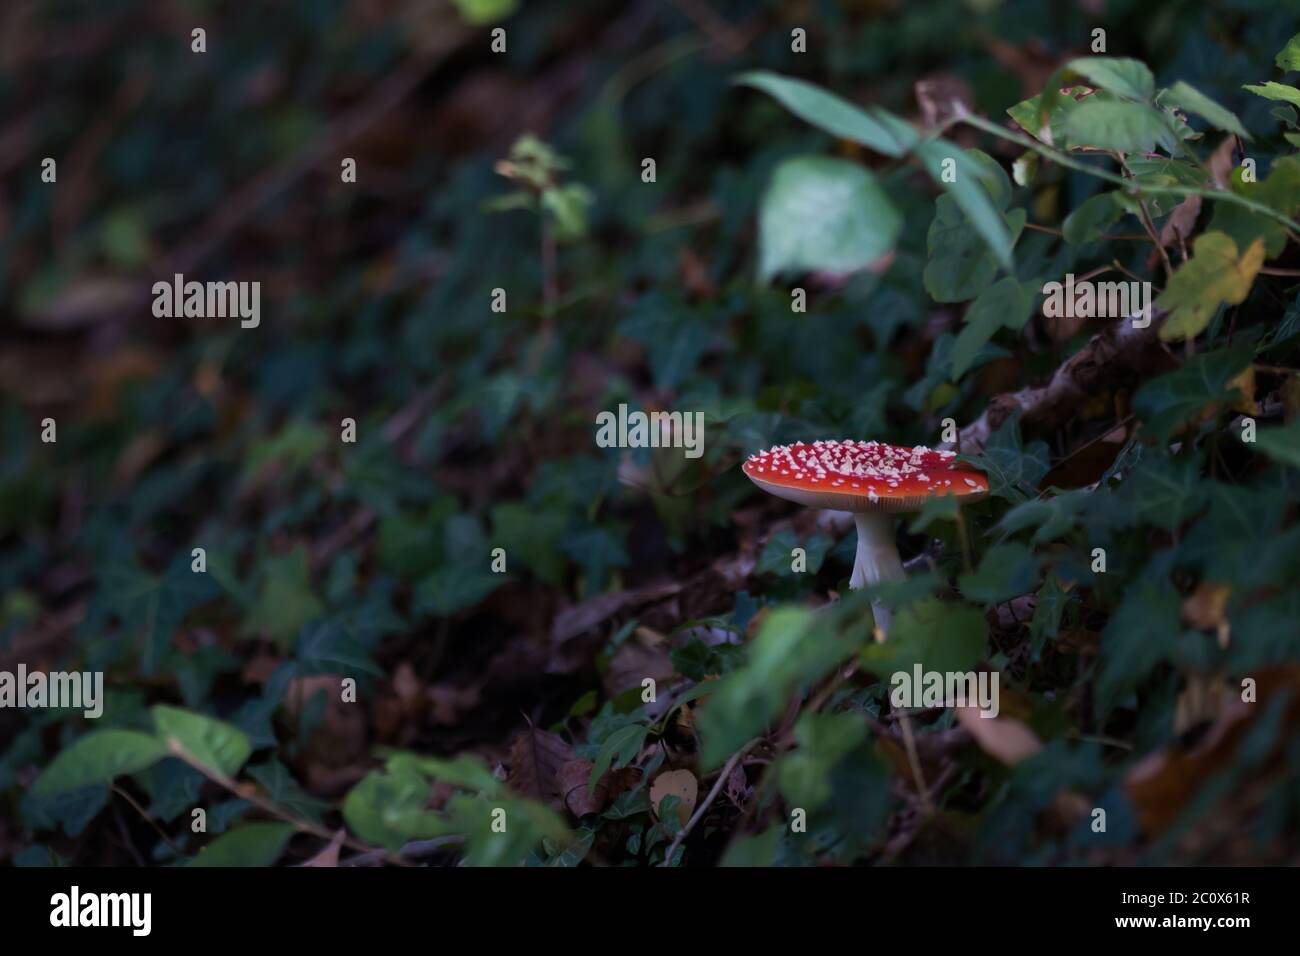 Mosca agarica (Amanita muscaria) che cresce su un pendio Foto Stock